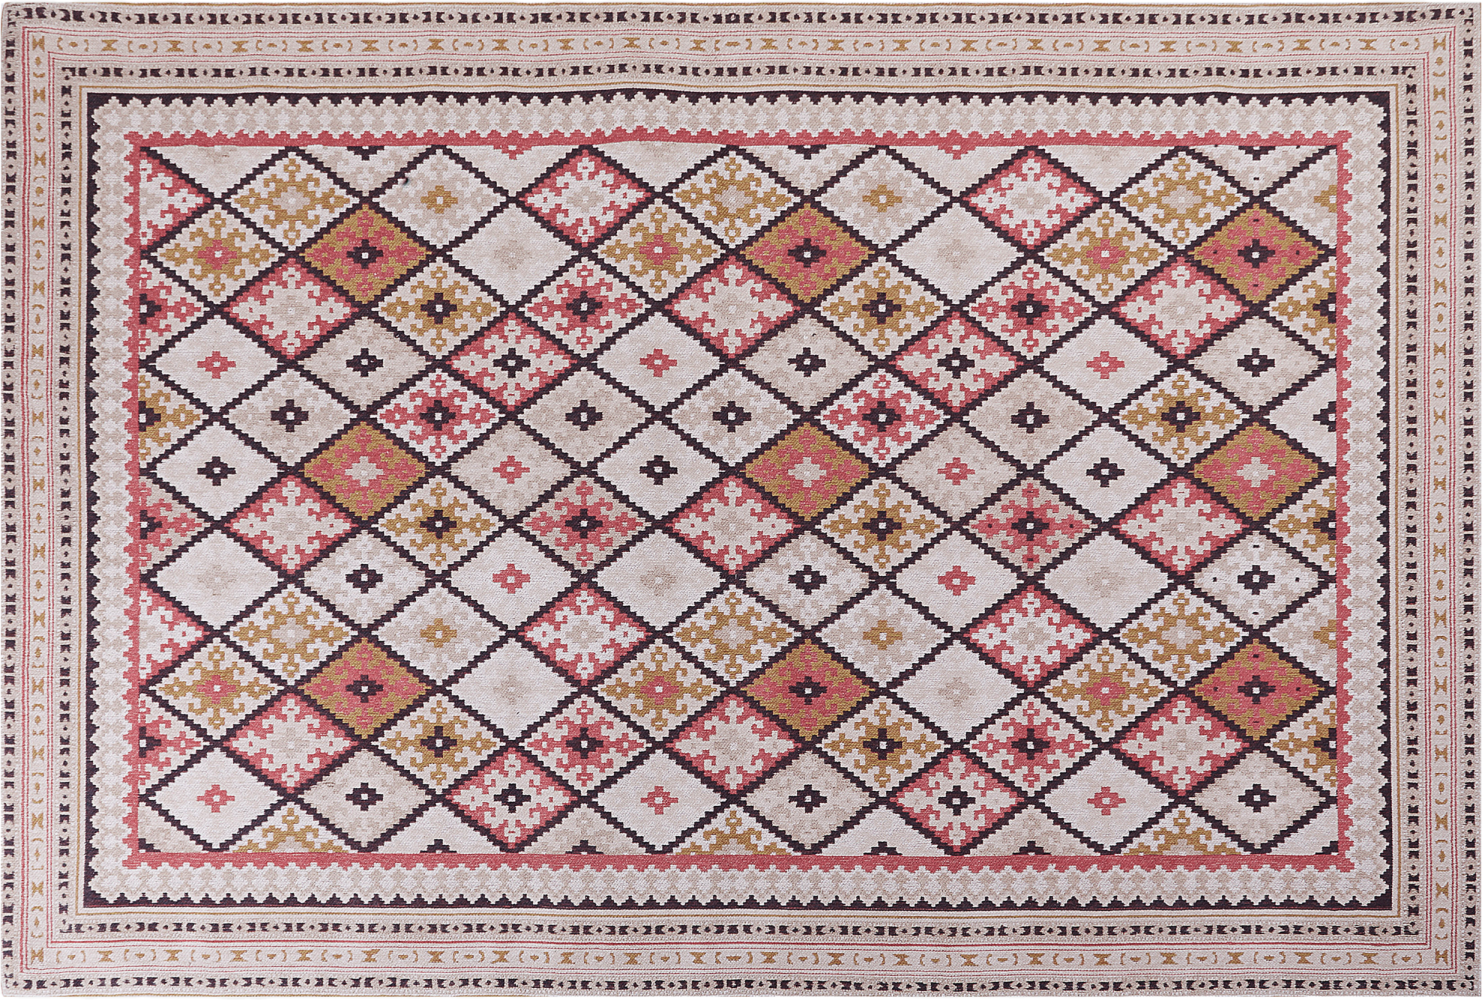 Teppich Baumwolle mehrfarbig geometrisches Muster 200 x 300 cm Kurzflor ANADAG Bild 1